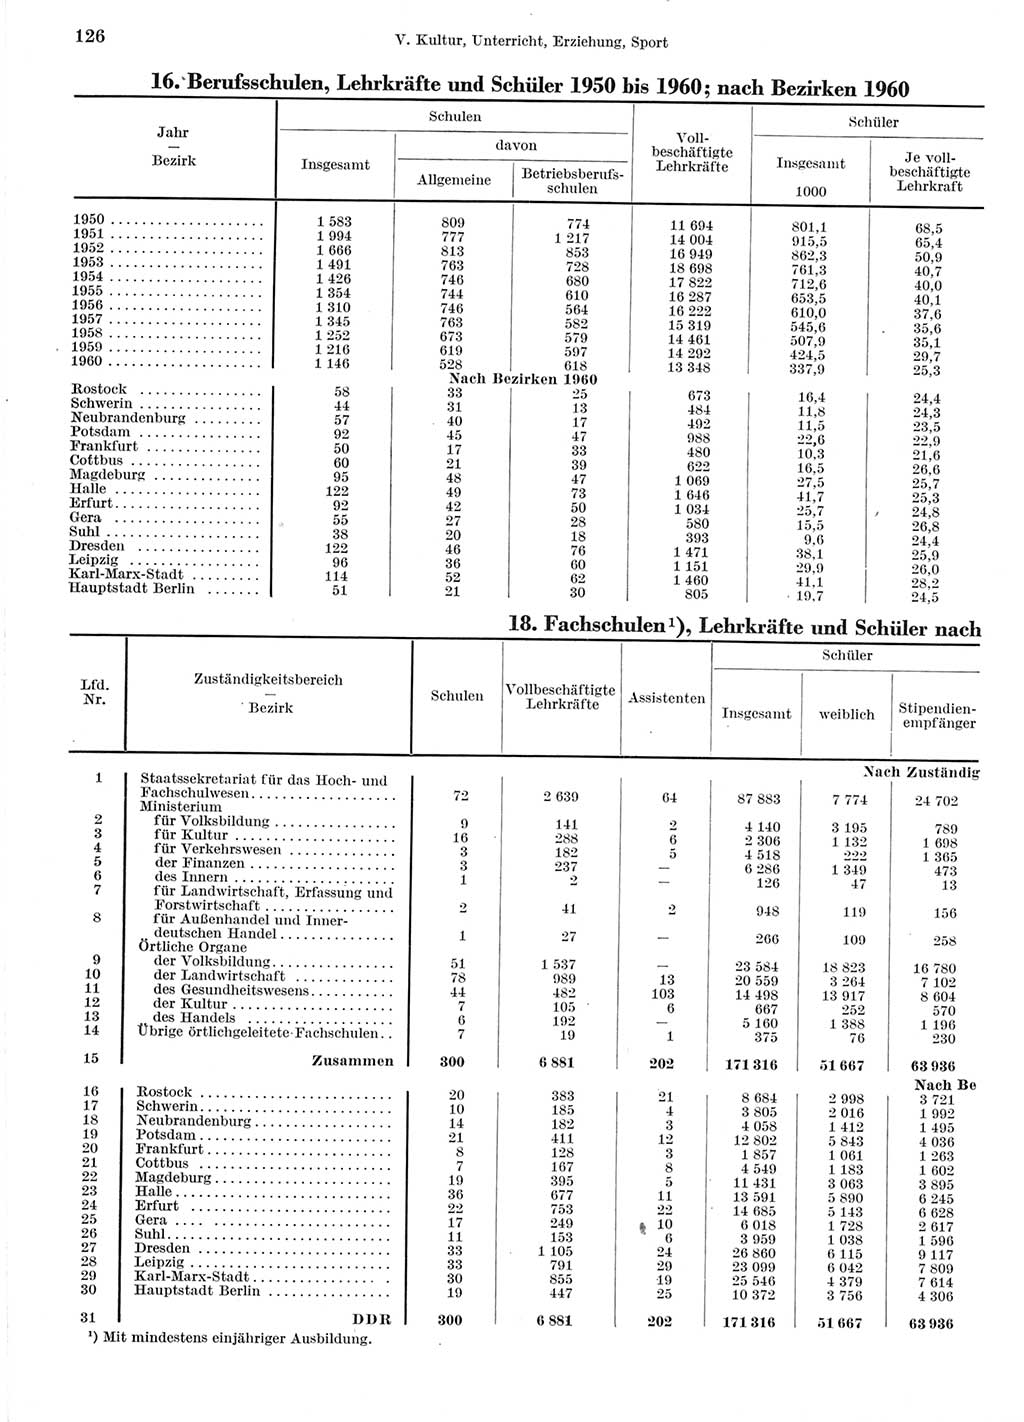 Statistisches Jahrbuch der Deutschen Demokratischen Republik (DDR) 1960-1961, Seite 126 (Stat. Jb. DDR 1960-1961, S. 126)